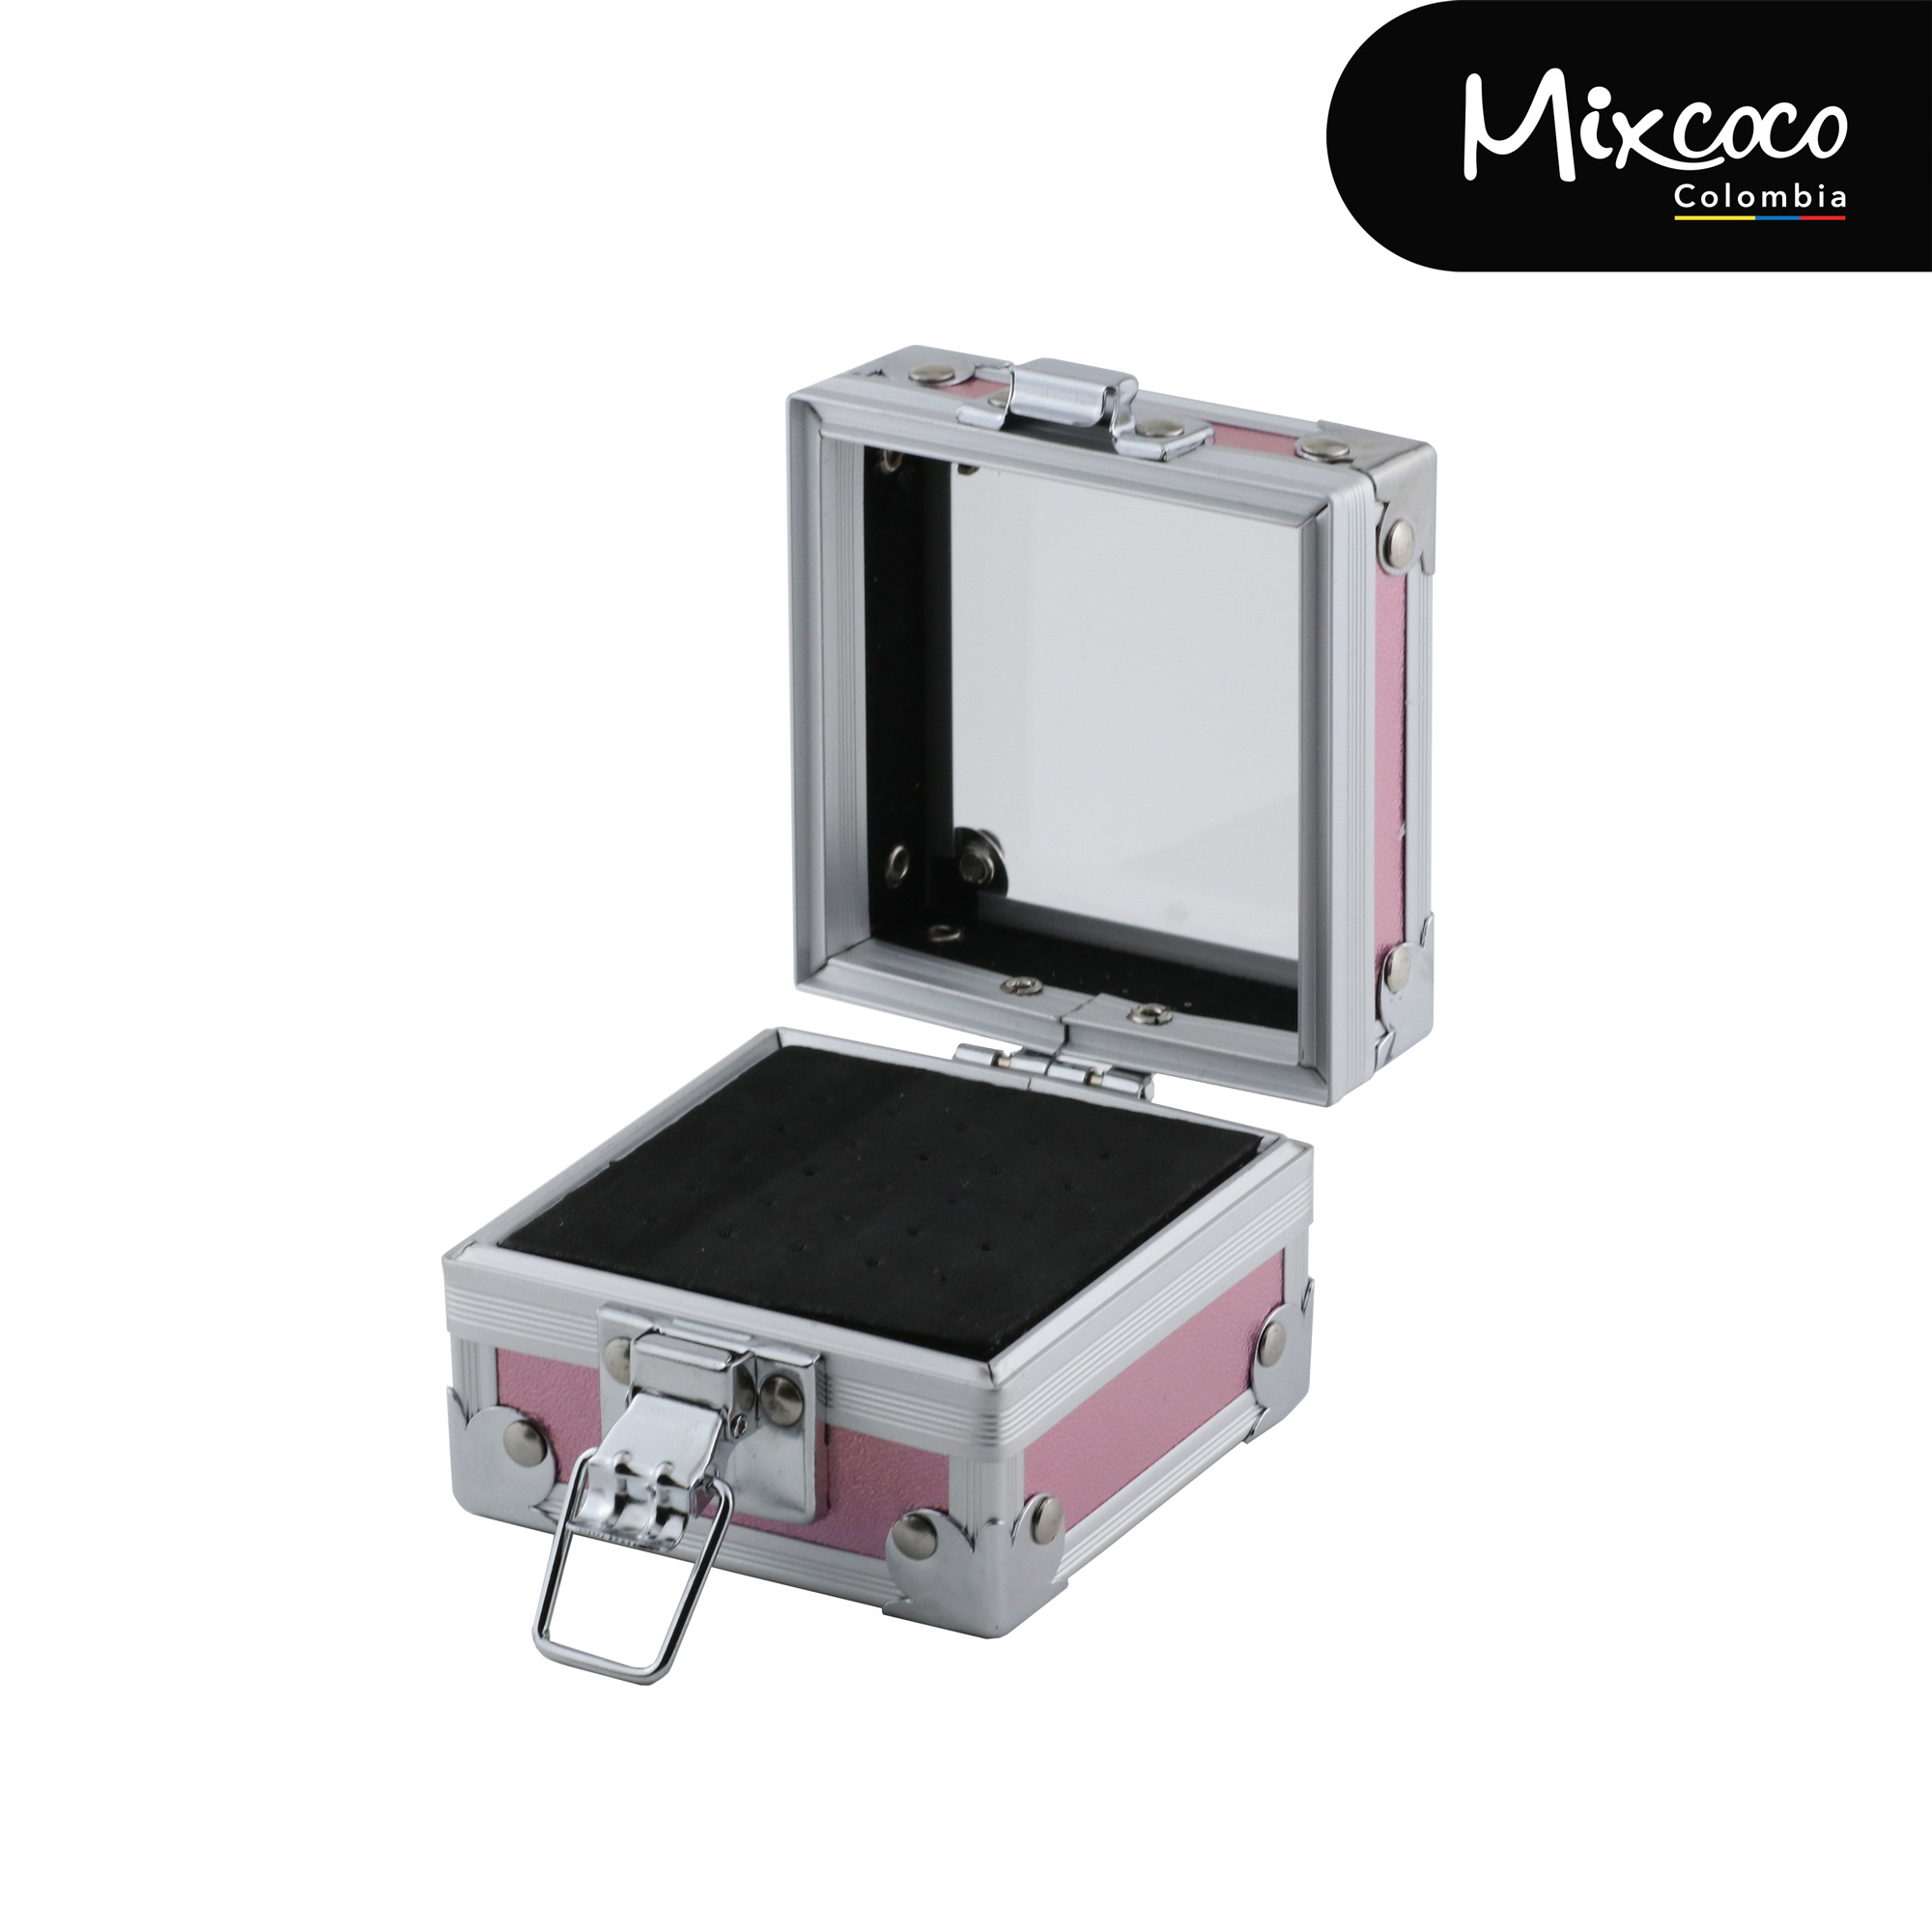 Cofre Porta Brocas Mixcoco rosado mixcoco - 2